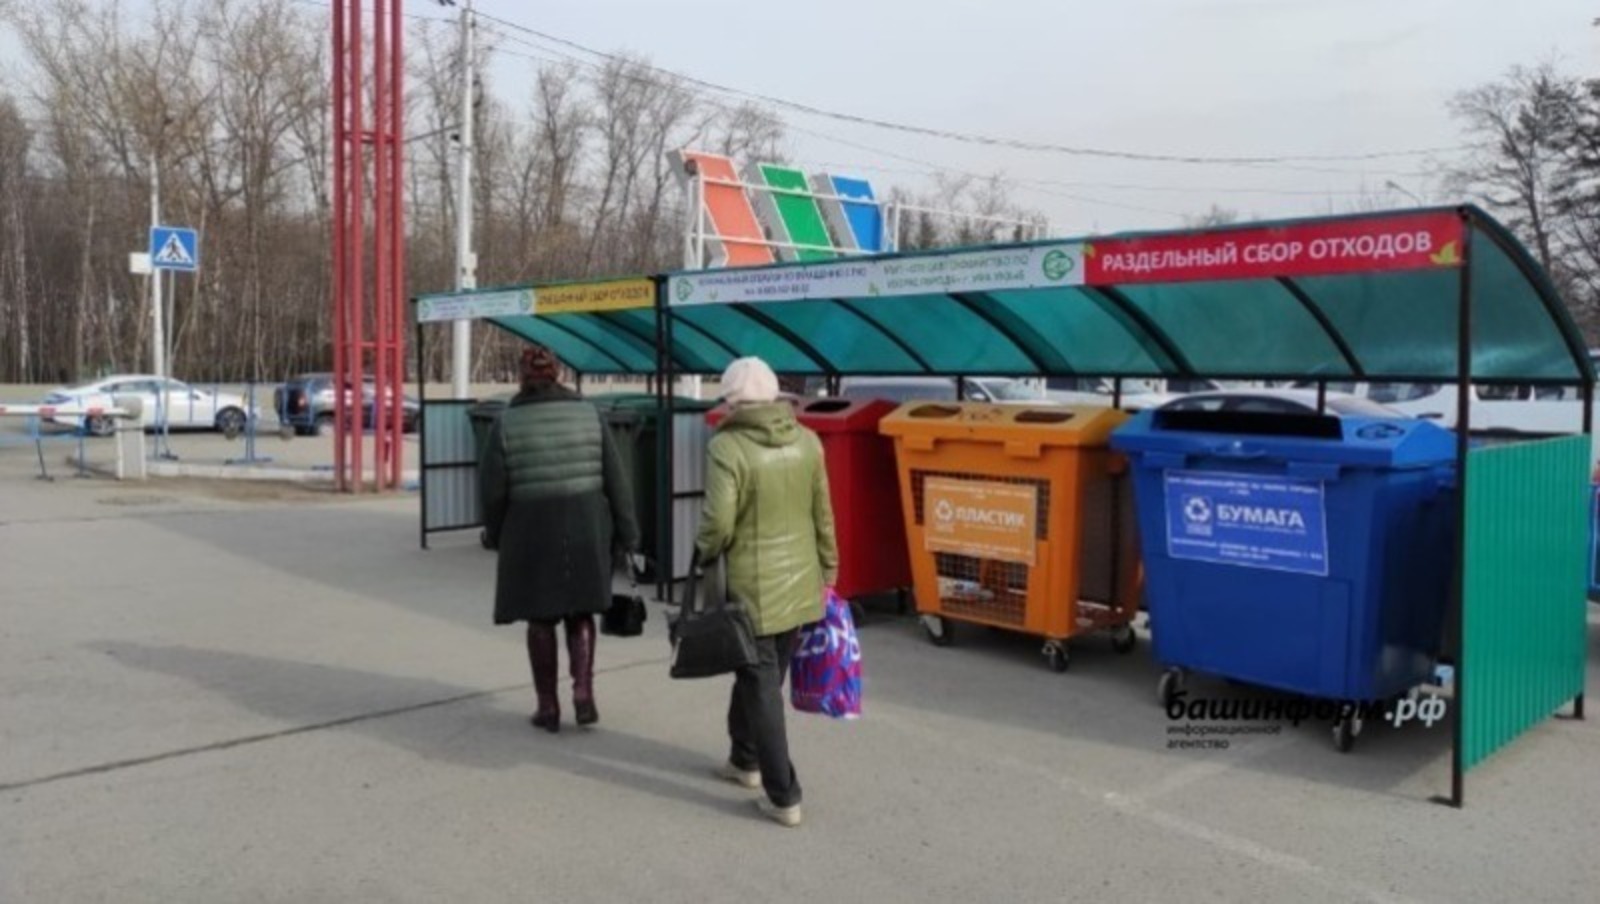 Башкирия получит 169 миллионов рублей на покупку контейнеров для раздельного сбора отходов